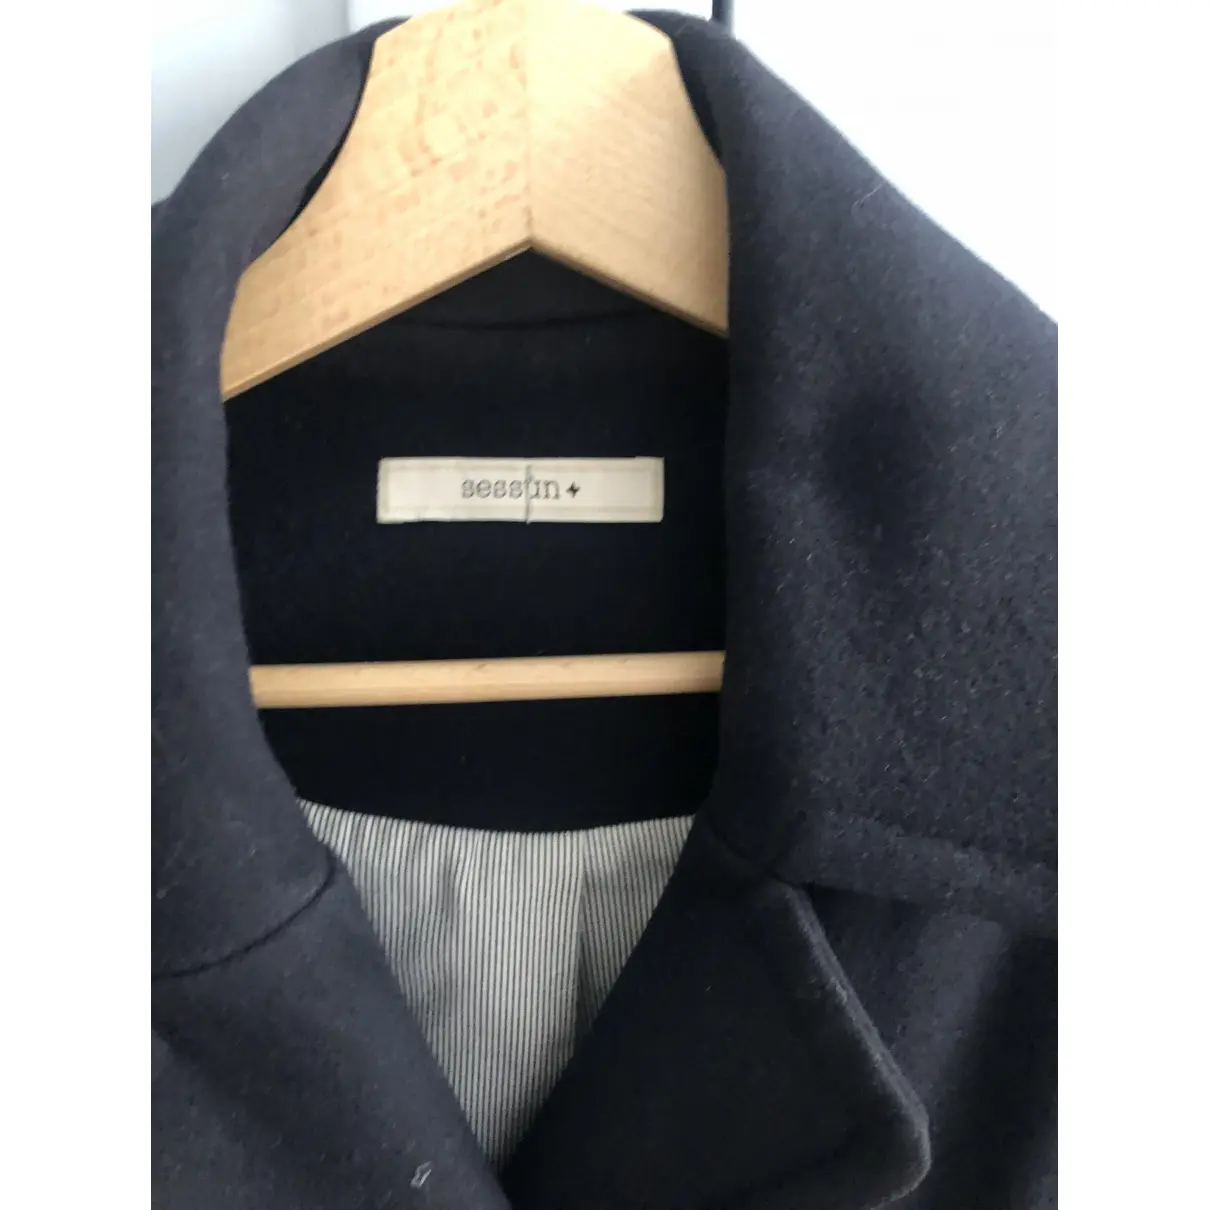 Buy Sessun Wool coat online